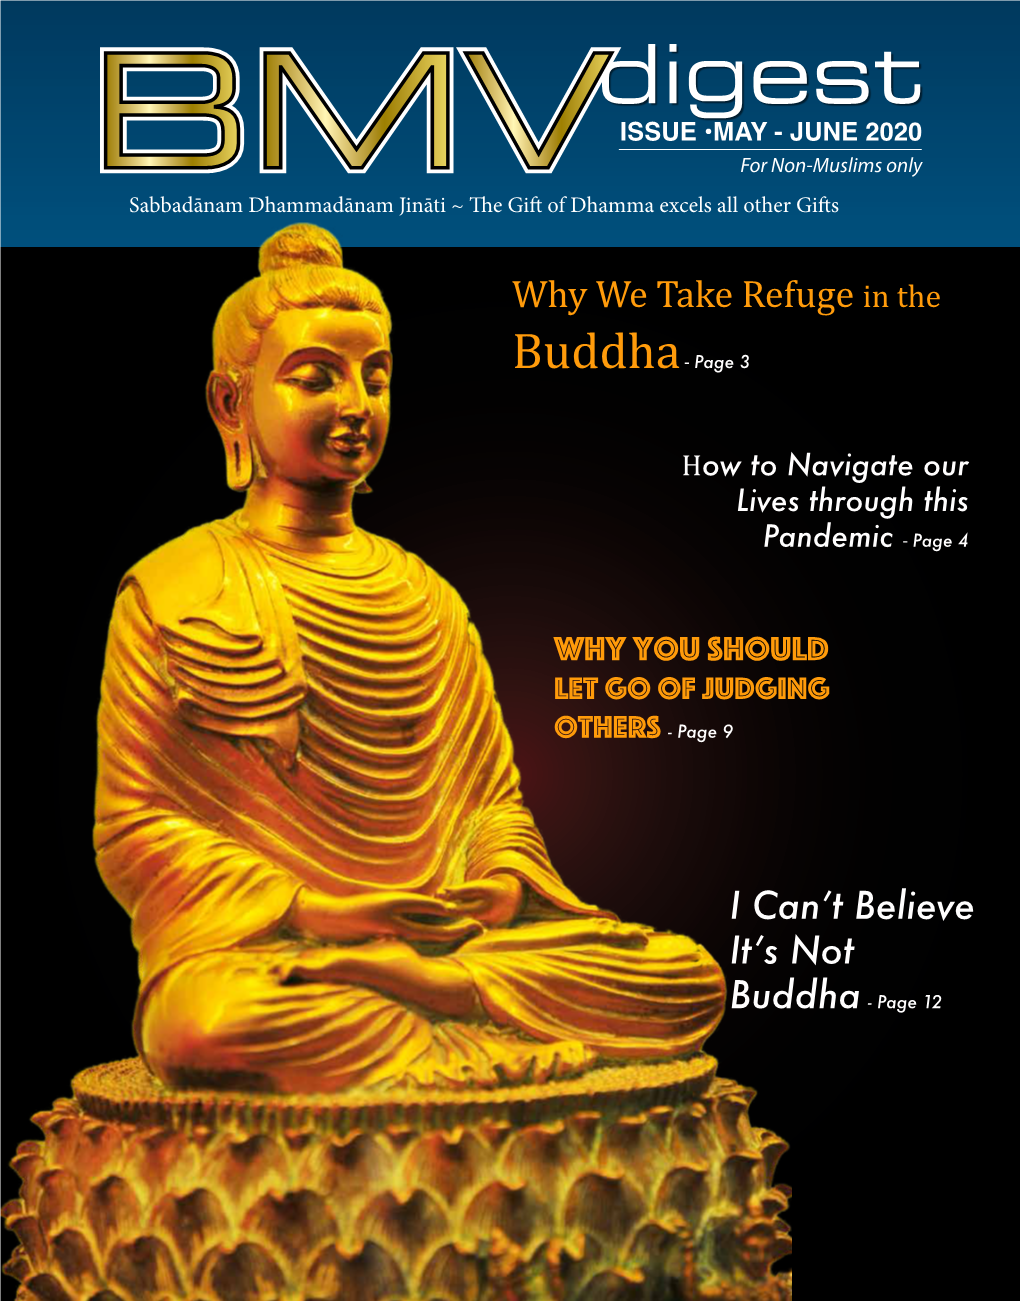 Buddha- Page 3